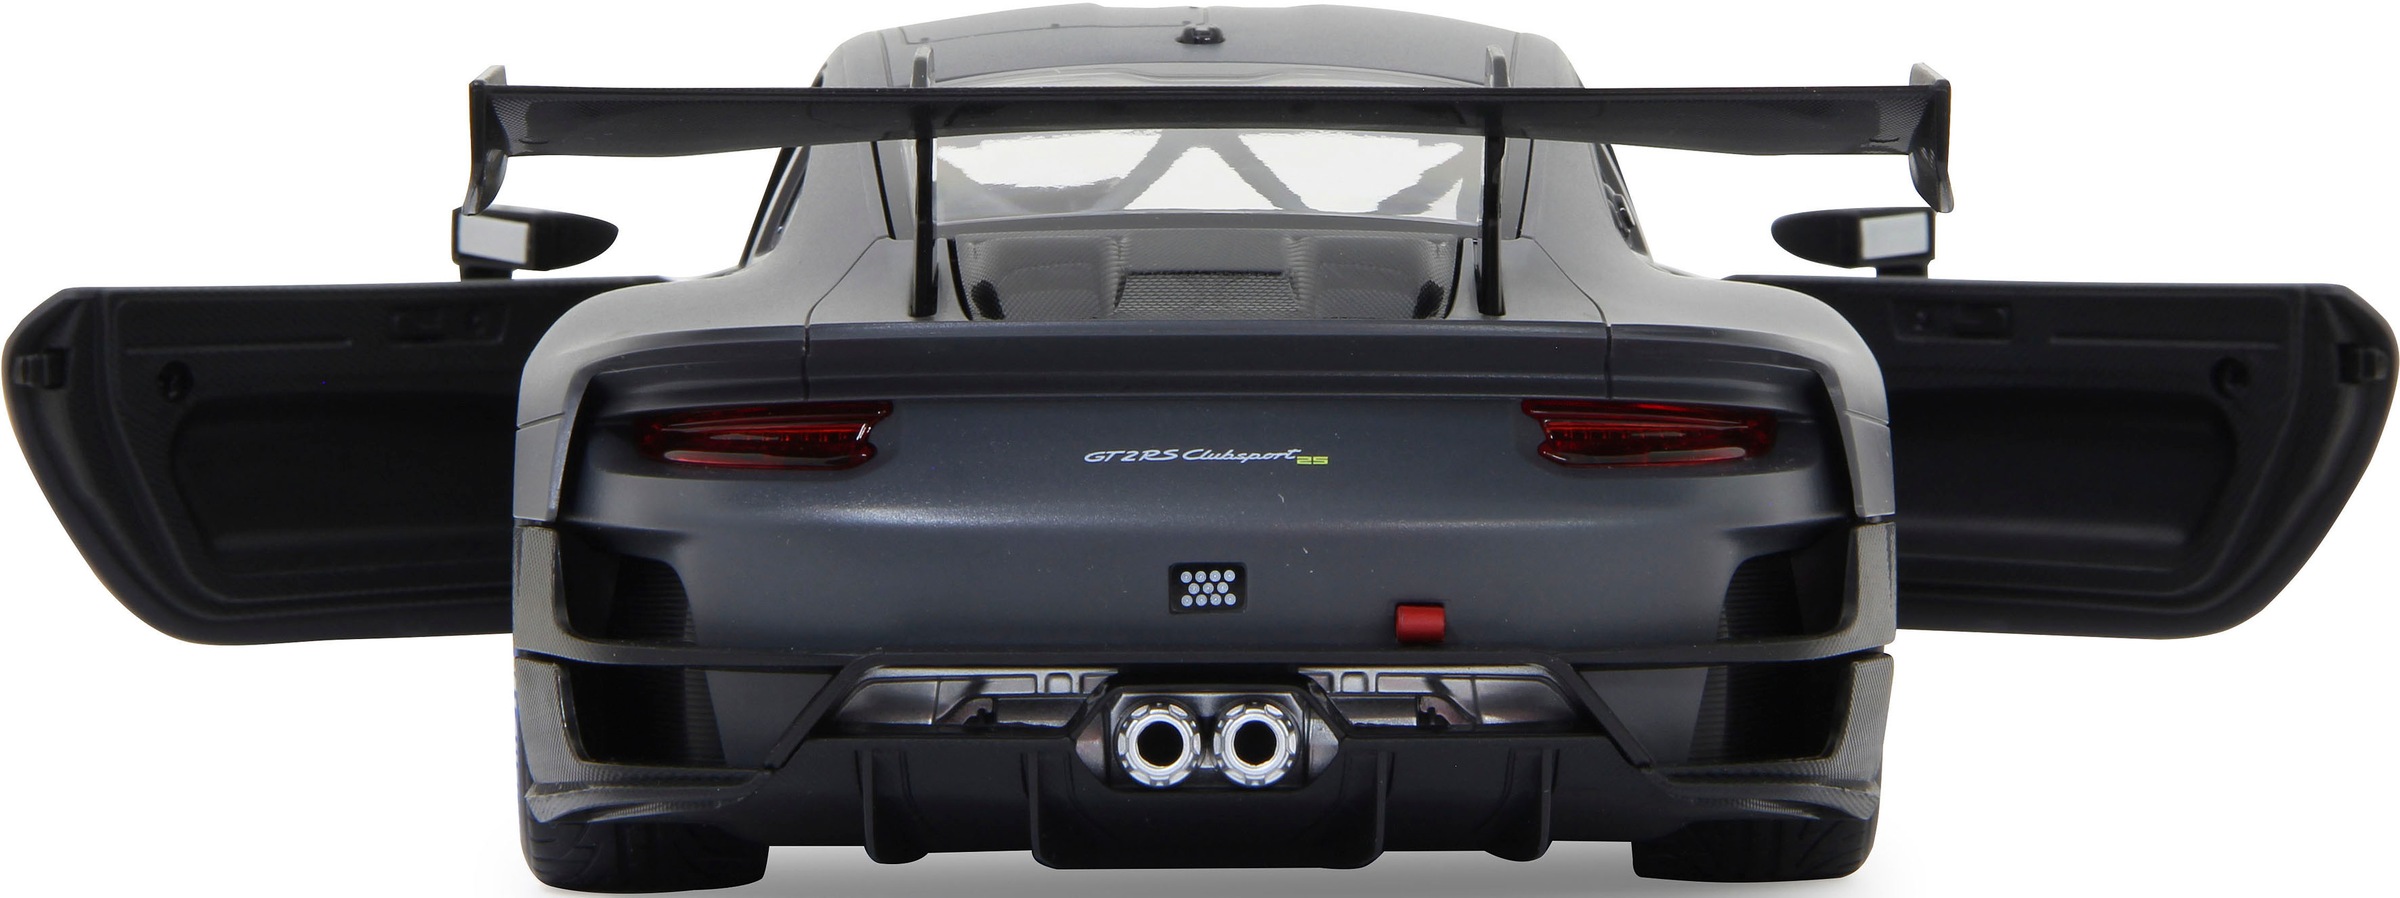 Jamara RC-Auto »Deluxe Cars, Porsche 911 GT2 RS Clubsport 25 1:14, grau - 2,4 GHz«, mit LED-Lichtern